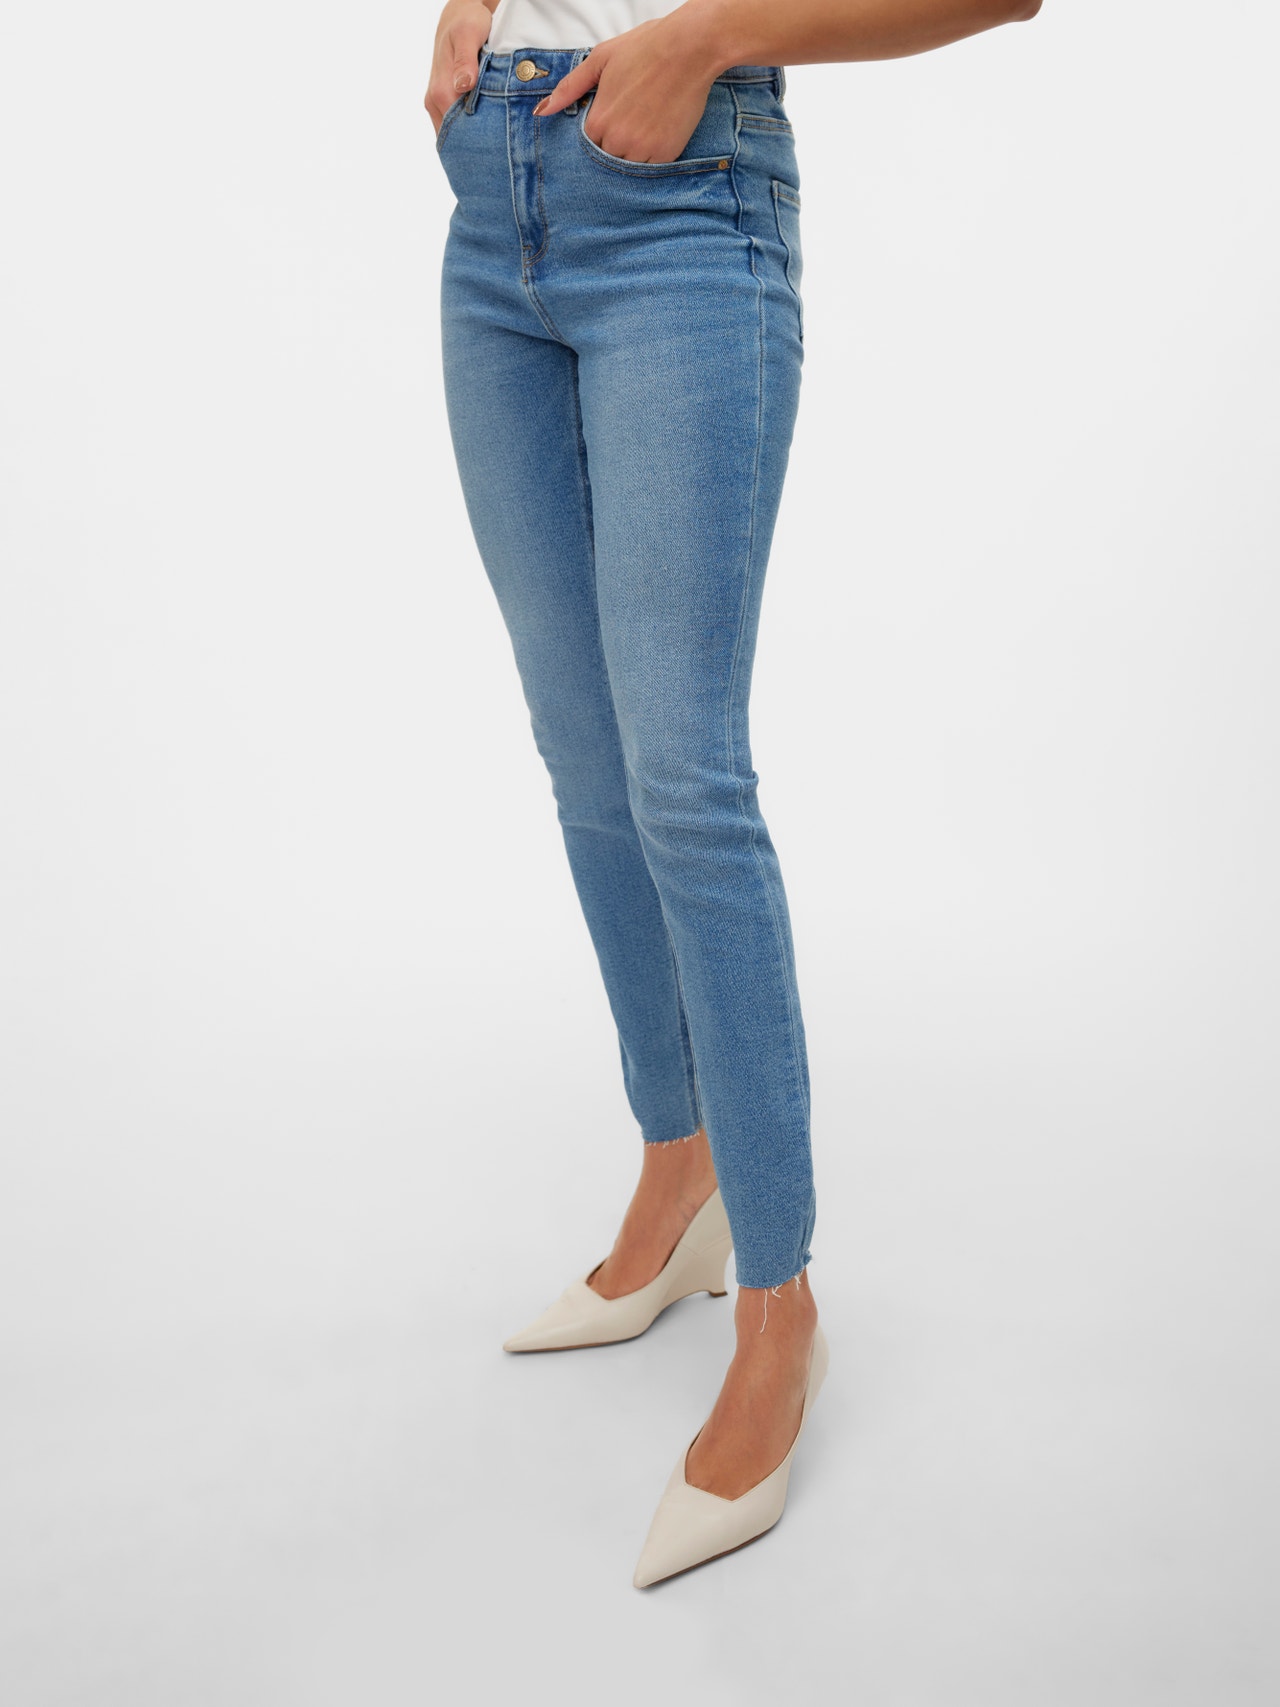 Vero Moda VMSOPHIA Høj talje Slim fit Jeans -Medium Blue Denim - 10315104